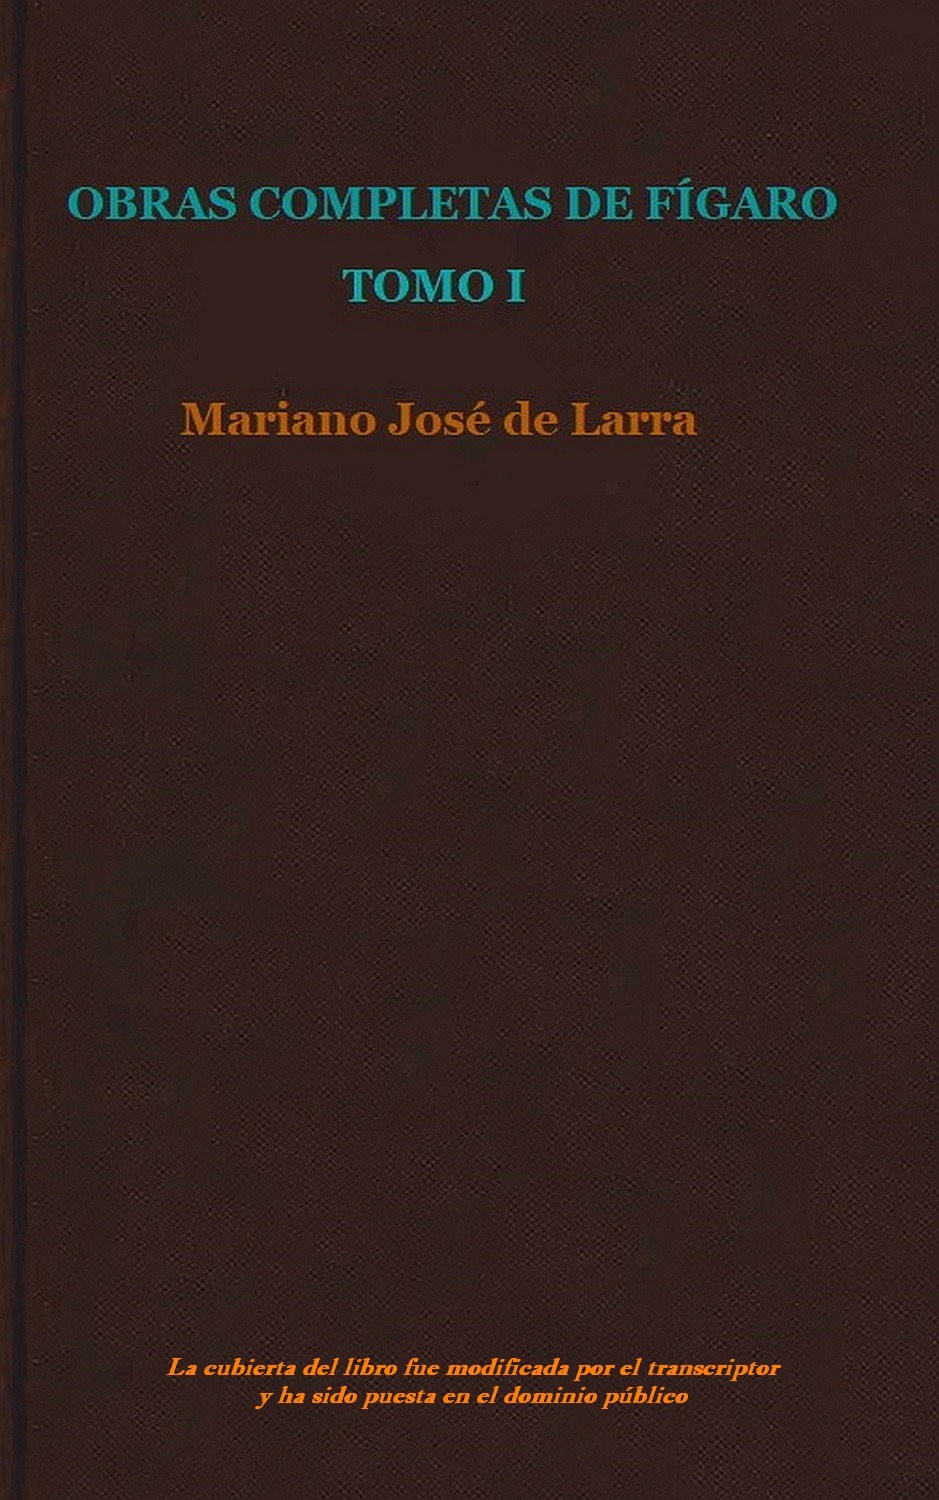 chocolate Árbol ganancia Obras Completas De Fígaro , by Mariano José de Larra—A Project Gutenberg  eBook